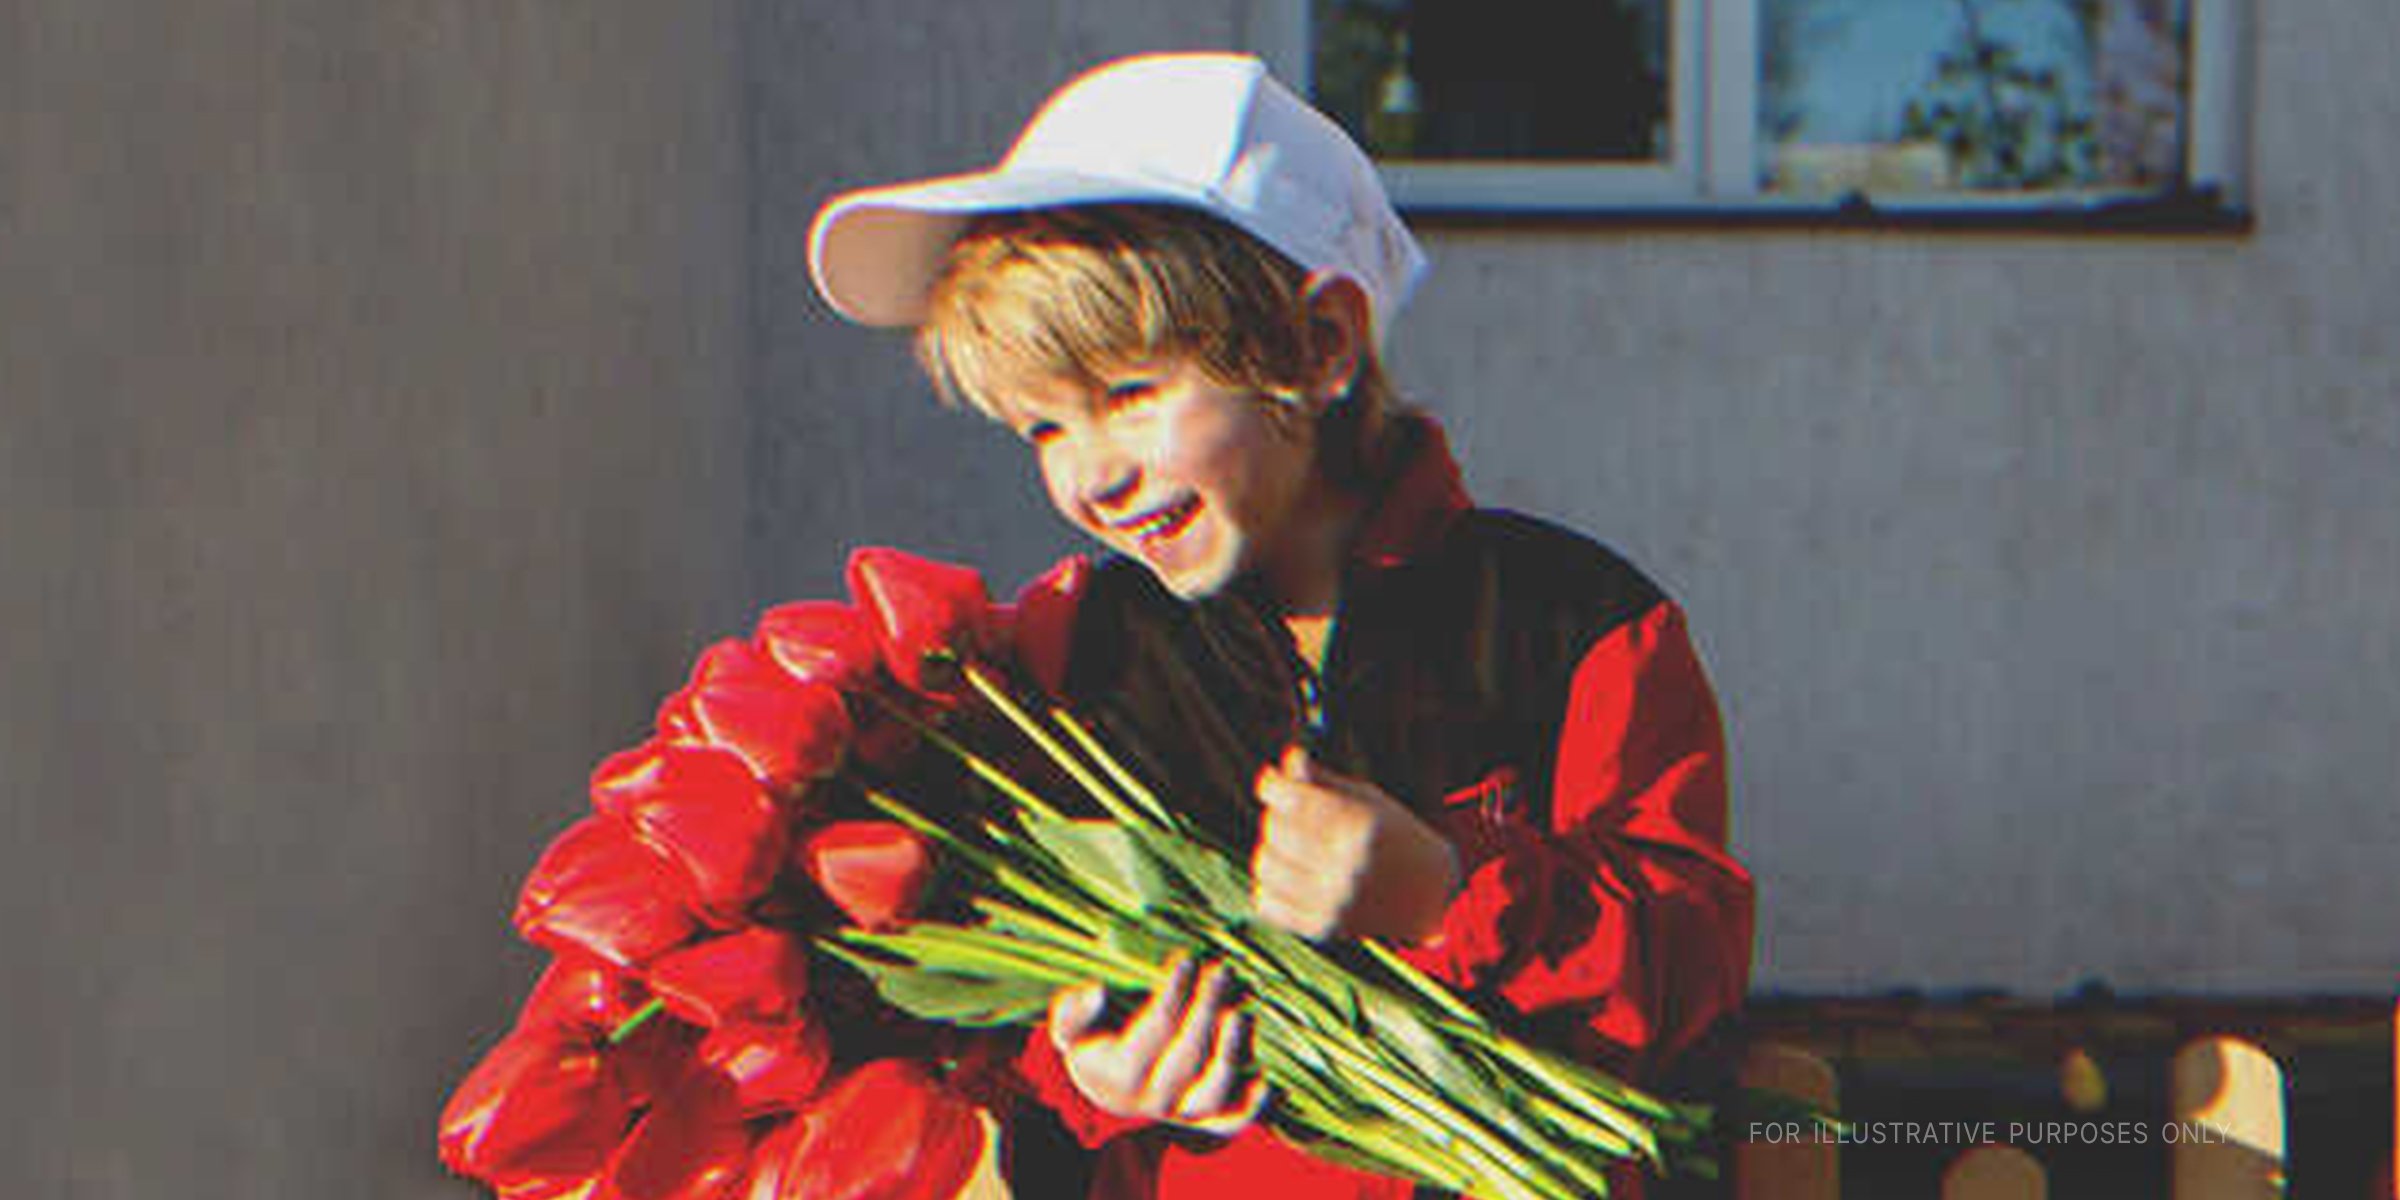 Junge mit Blumen | Quelle: Shutterstock